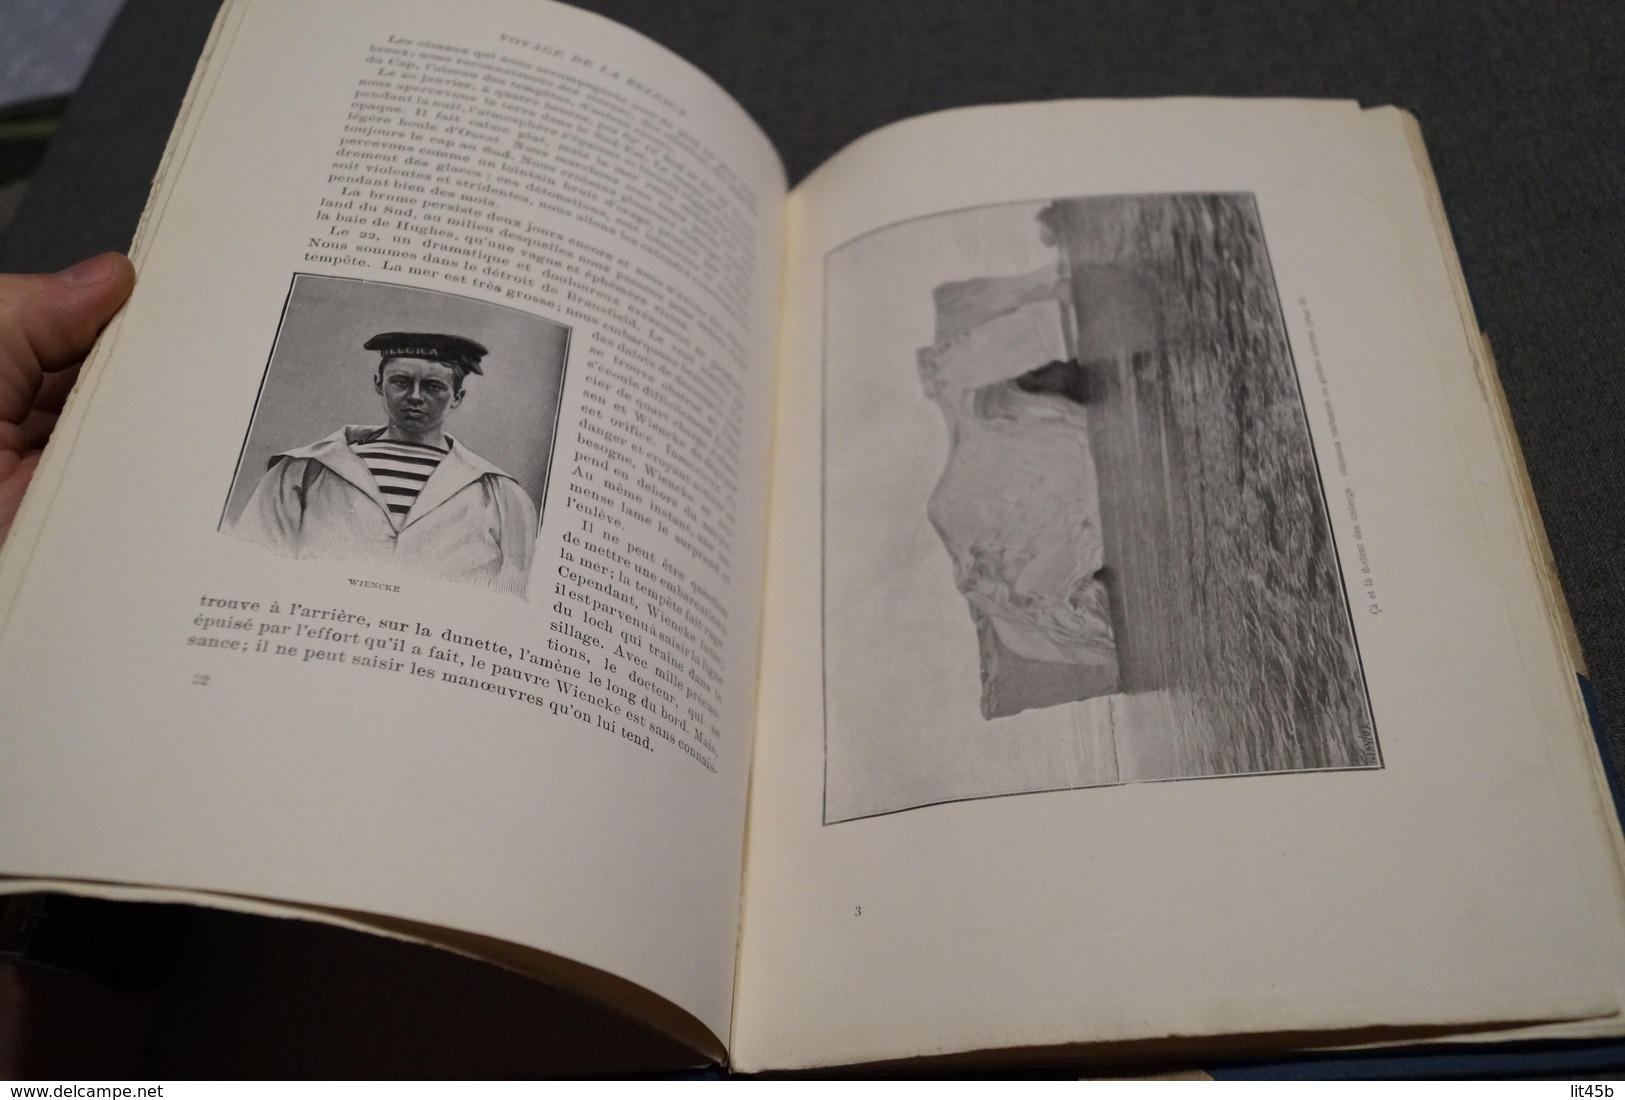 Voyage de la Belgica,par le commandant De Gerlache,1902,complet 95 pages,25,5 Cm / 17 Cm. Bateaux,RARE